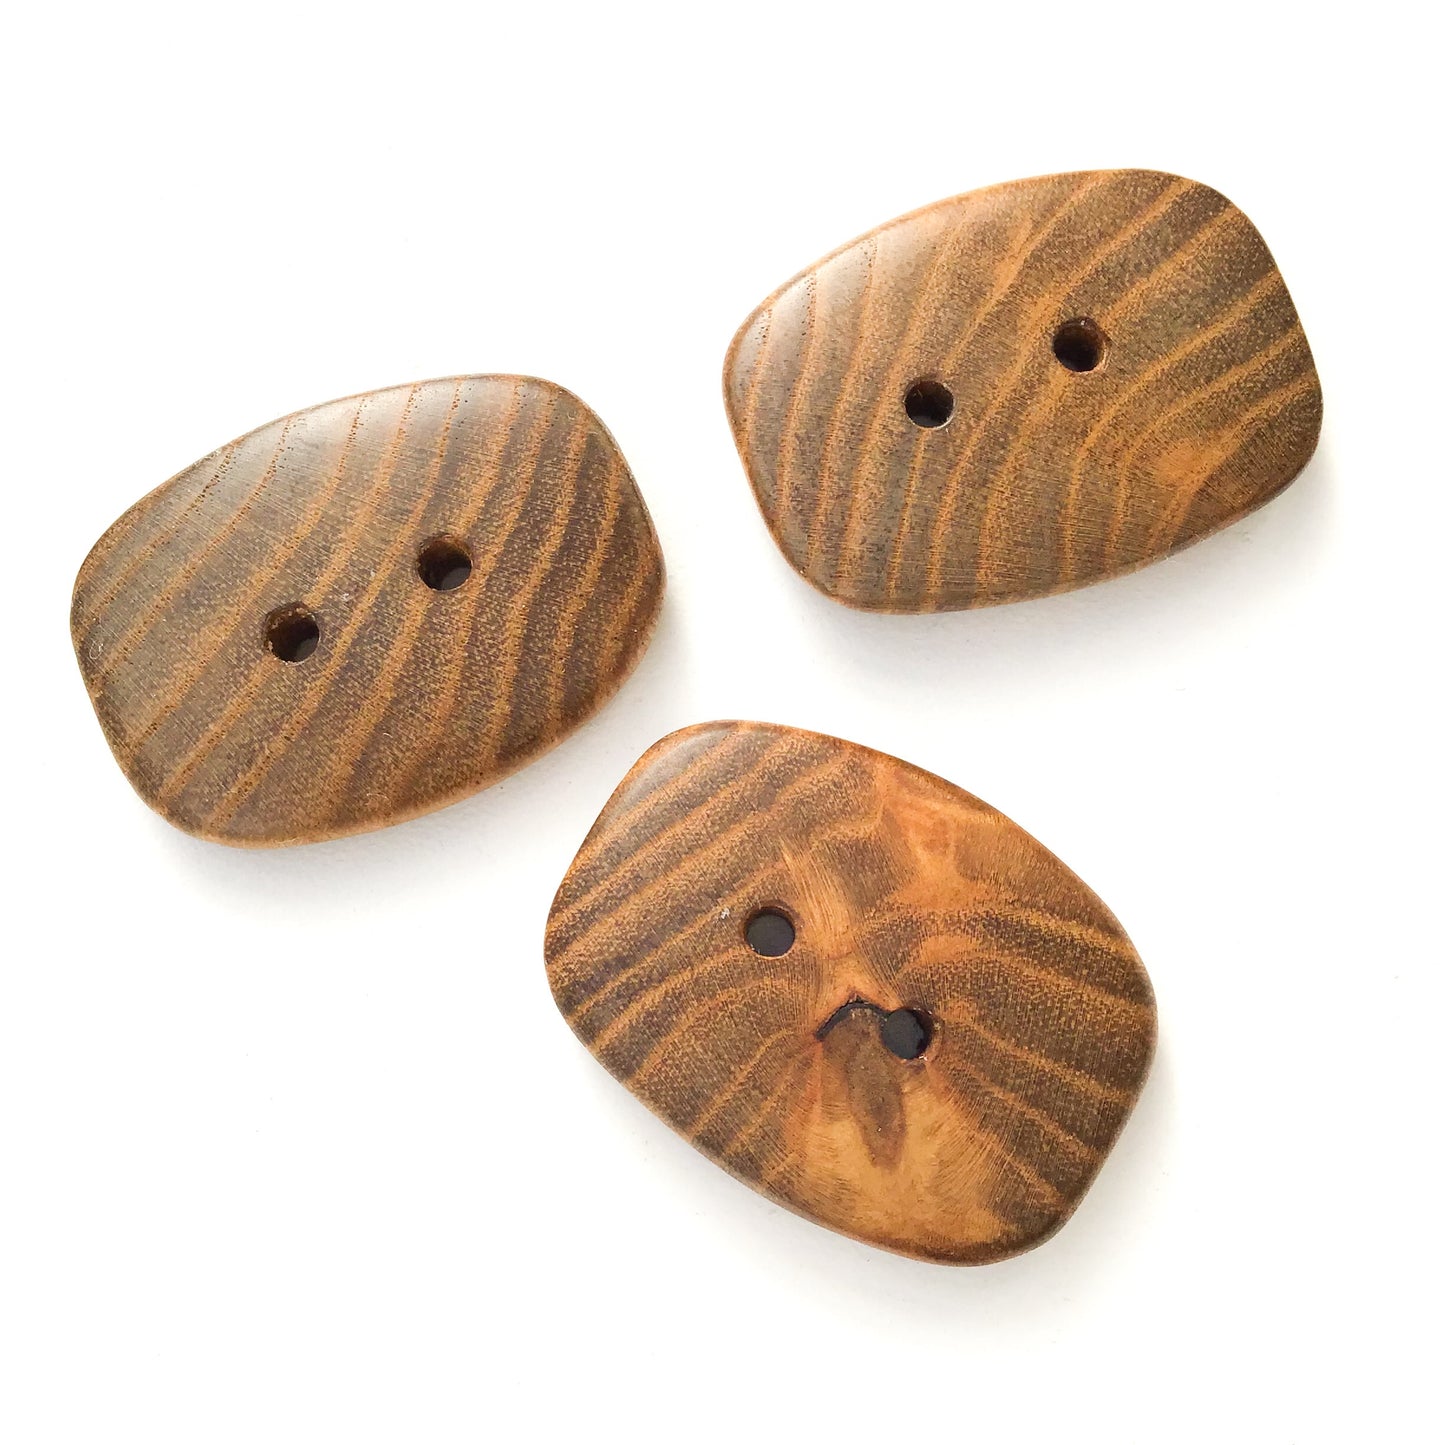 Sassafras Wood Buttons - Round Wood Buttons - 1" x 1  3/8" - 3 Pack